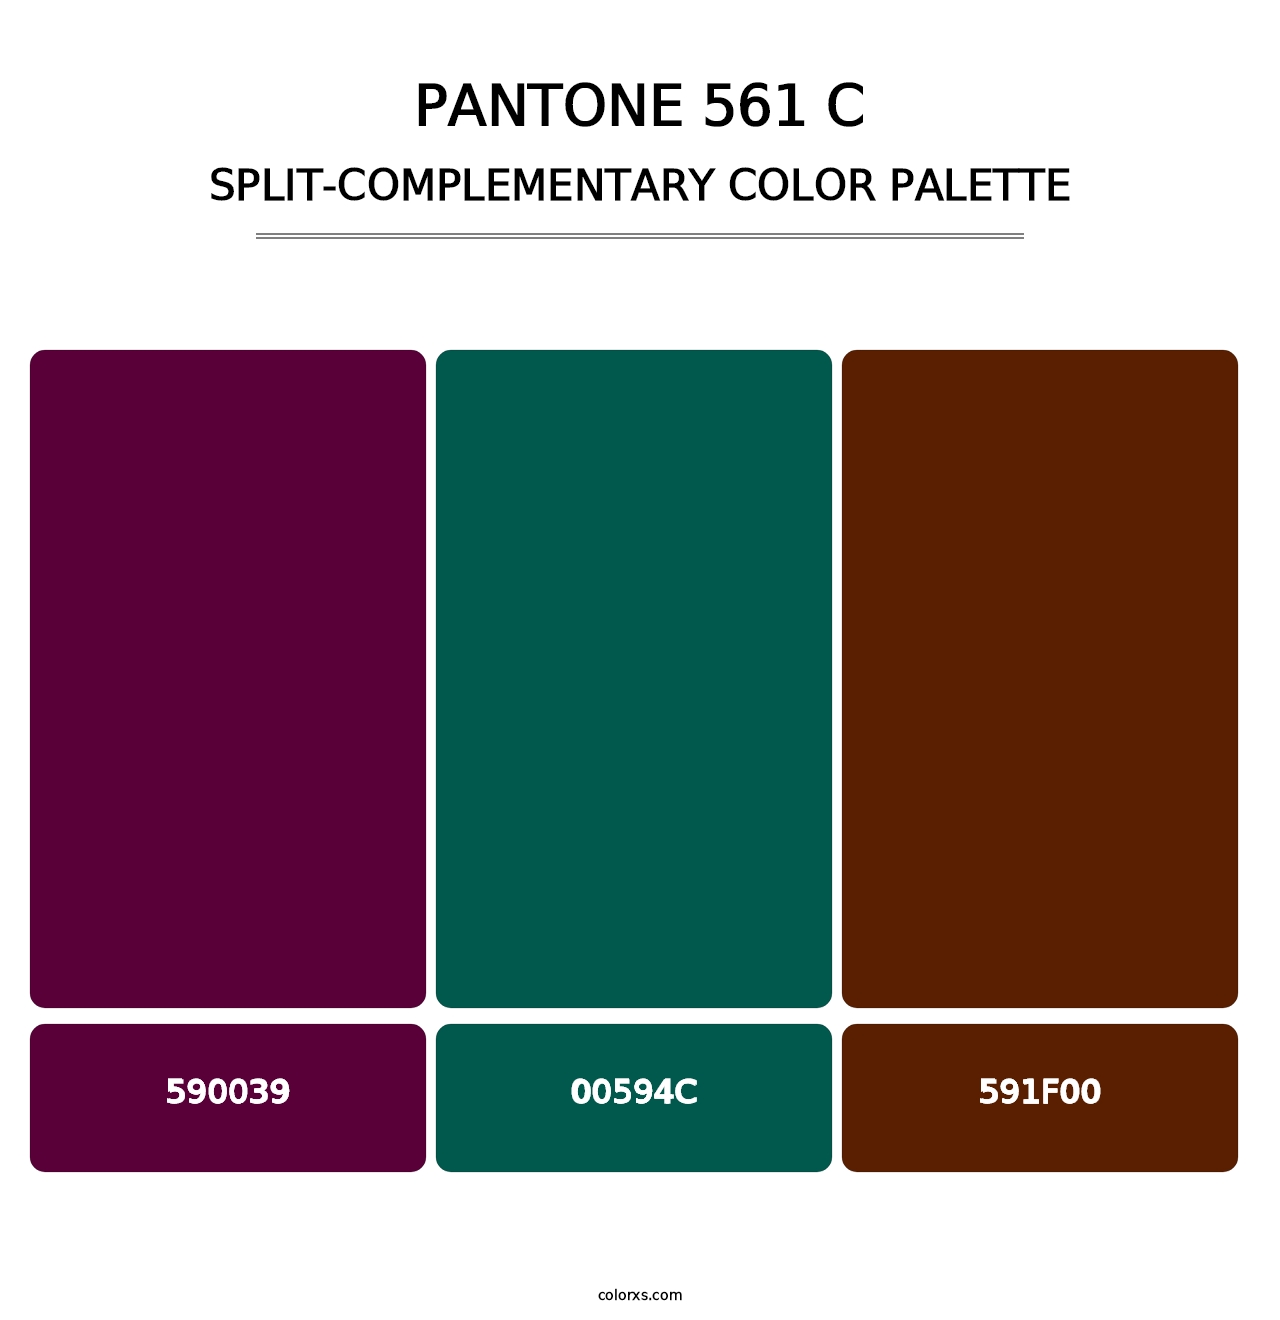 PANTONE 561 C - Split-Complementary Color Palette